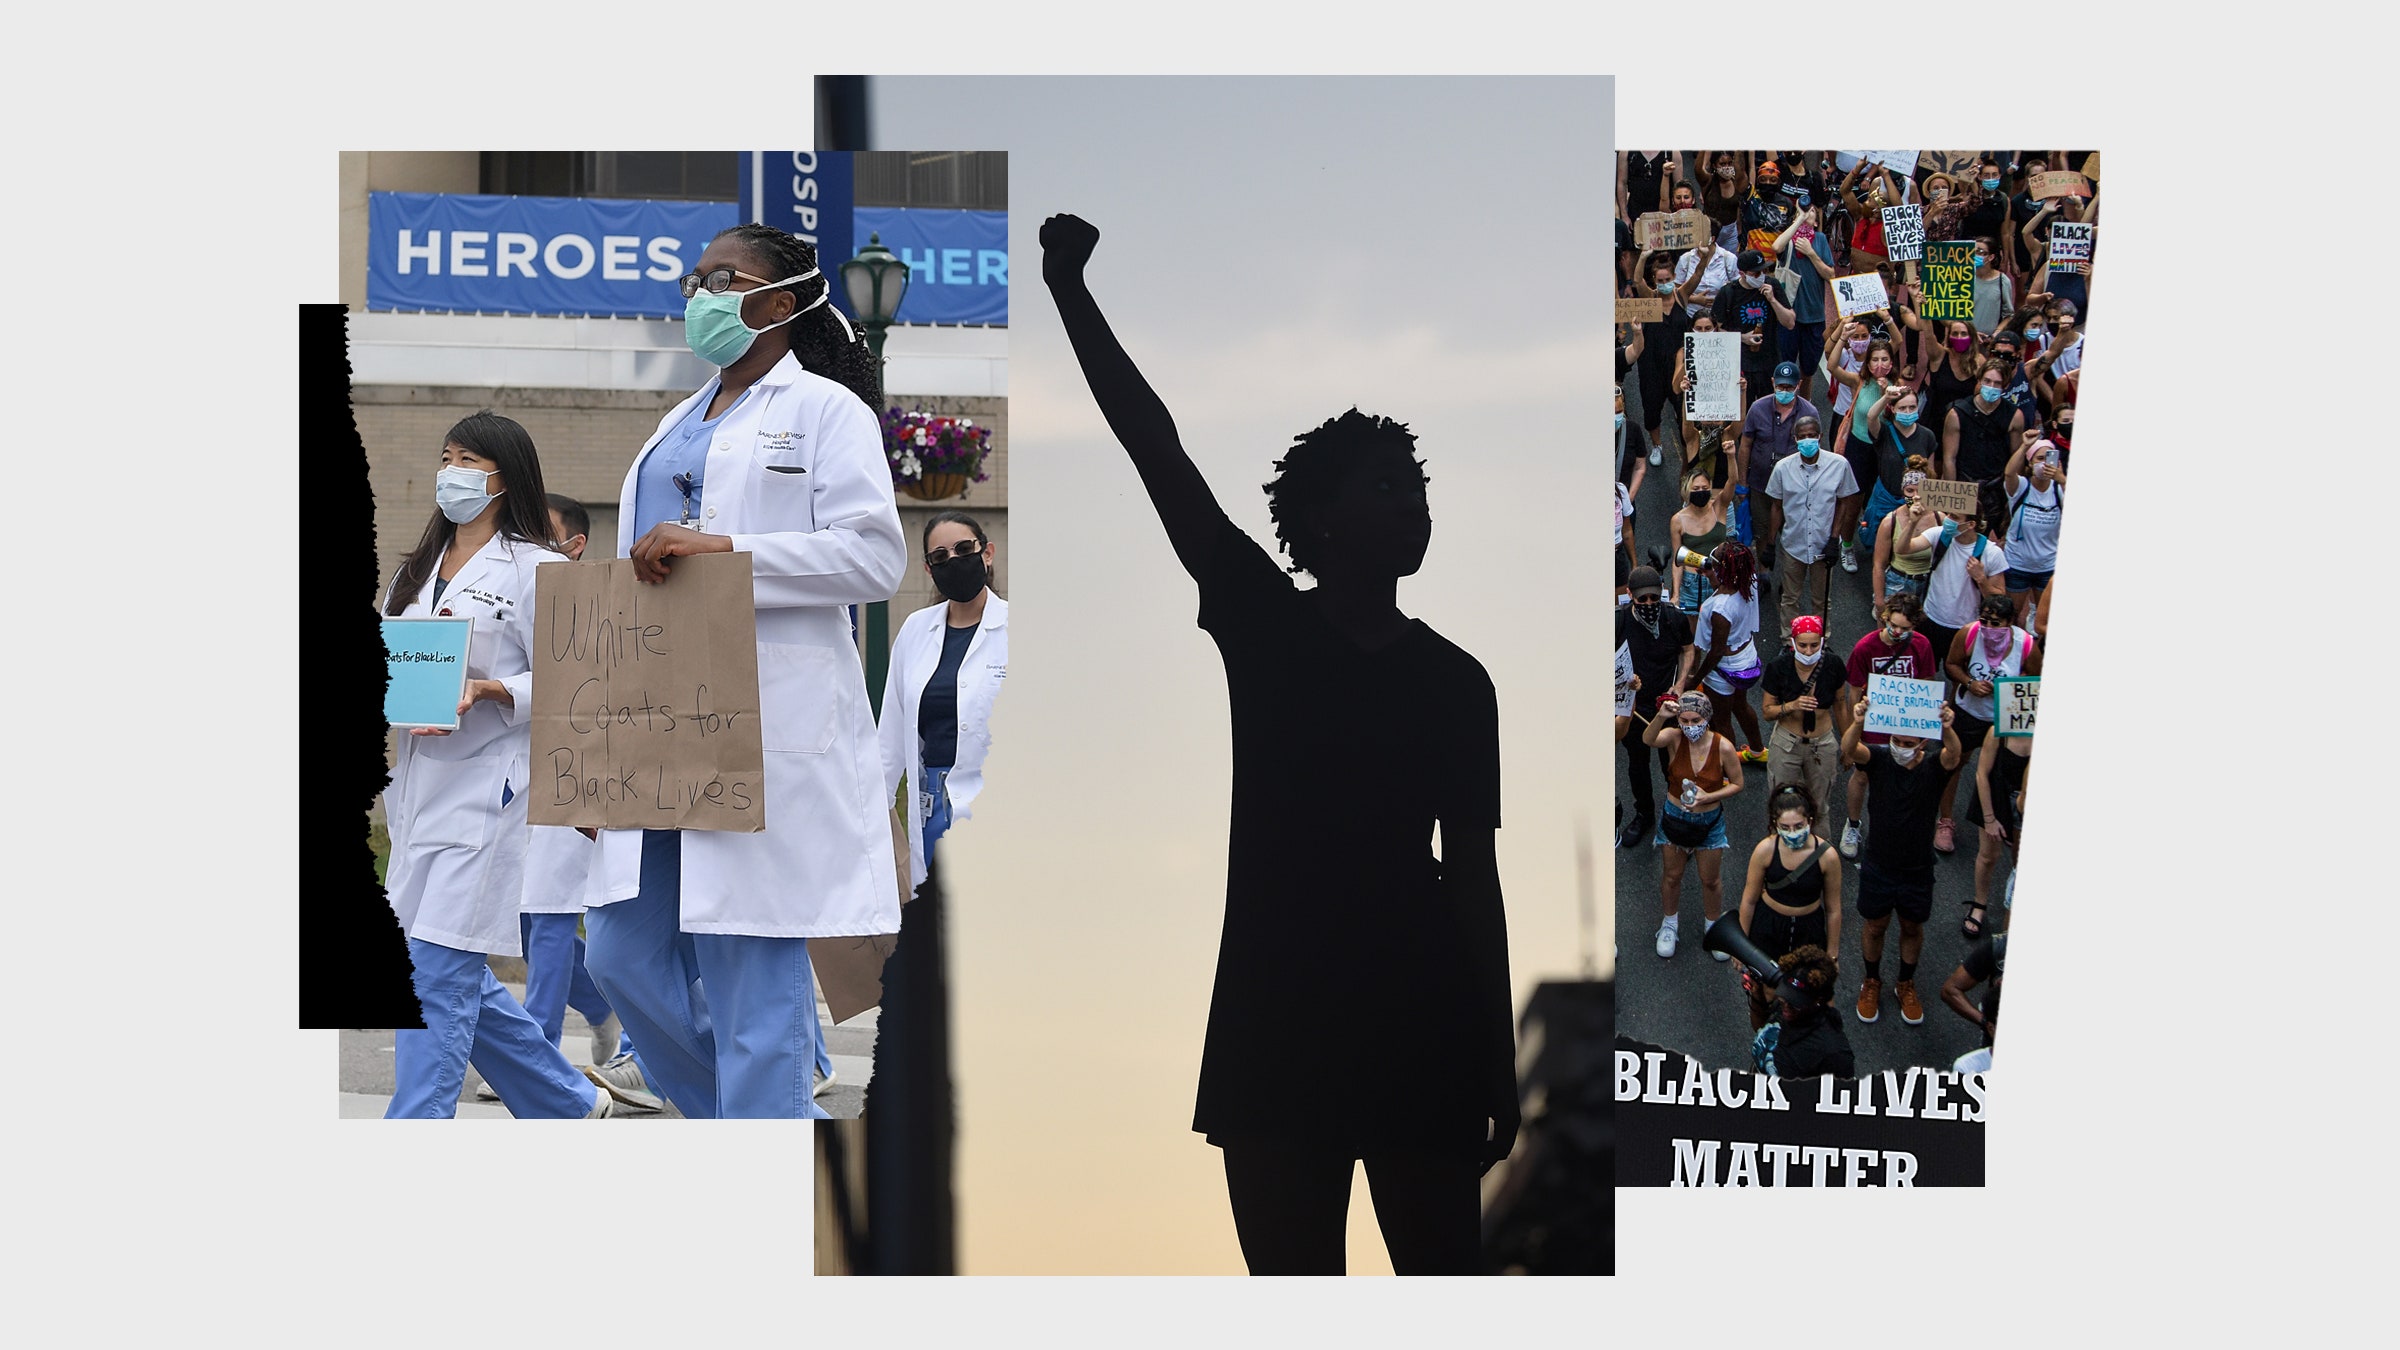 Colagem de imagens, incluindo uma dos manifestantes do Black Lives Matter